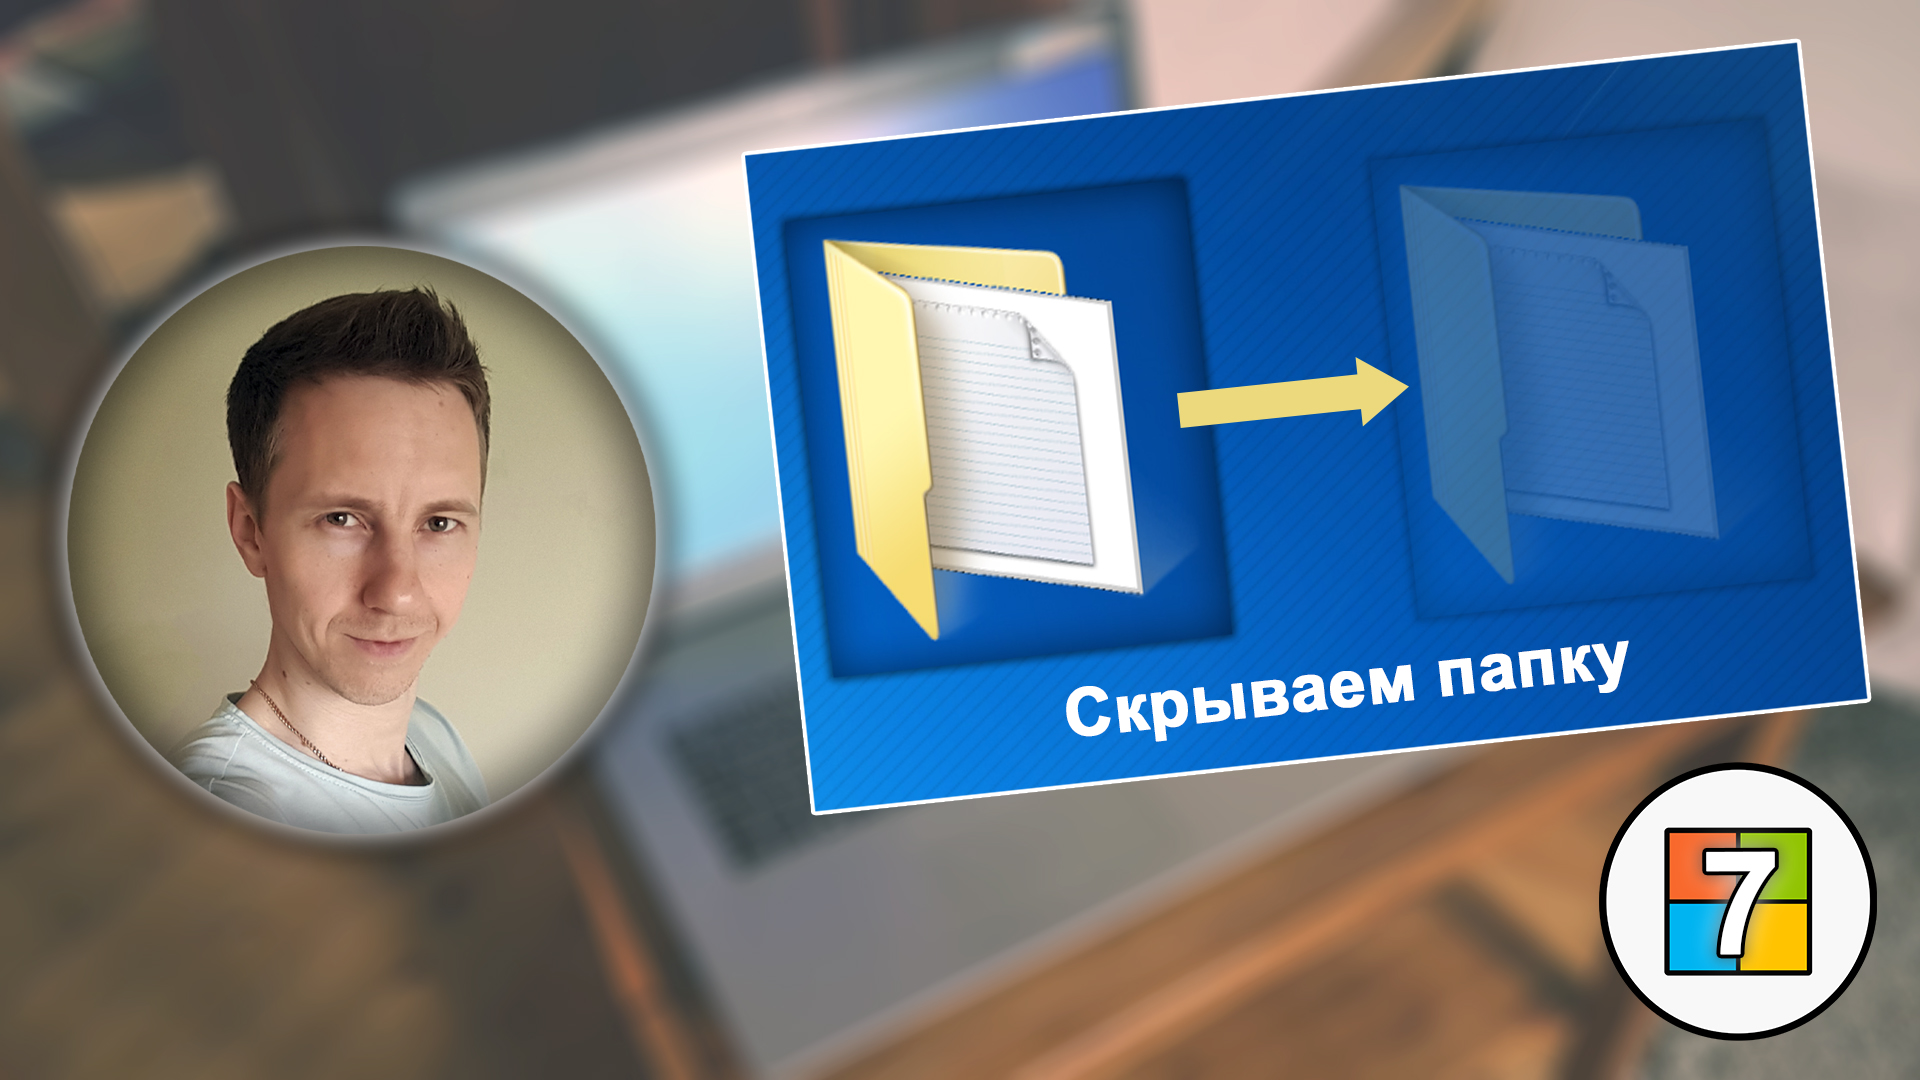 Лицо Владимира Белева, обычная и скрытая папка на синем фоне, логотип Windows 7.